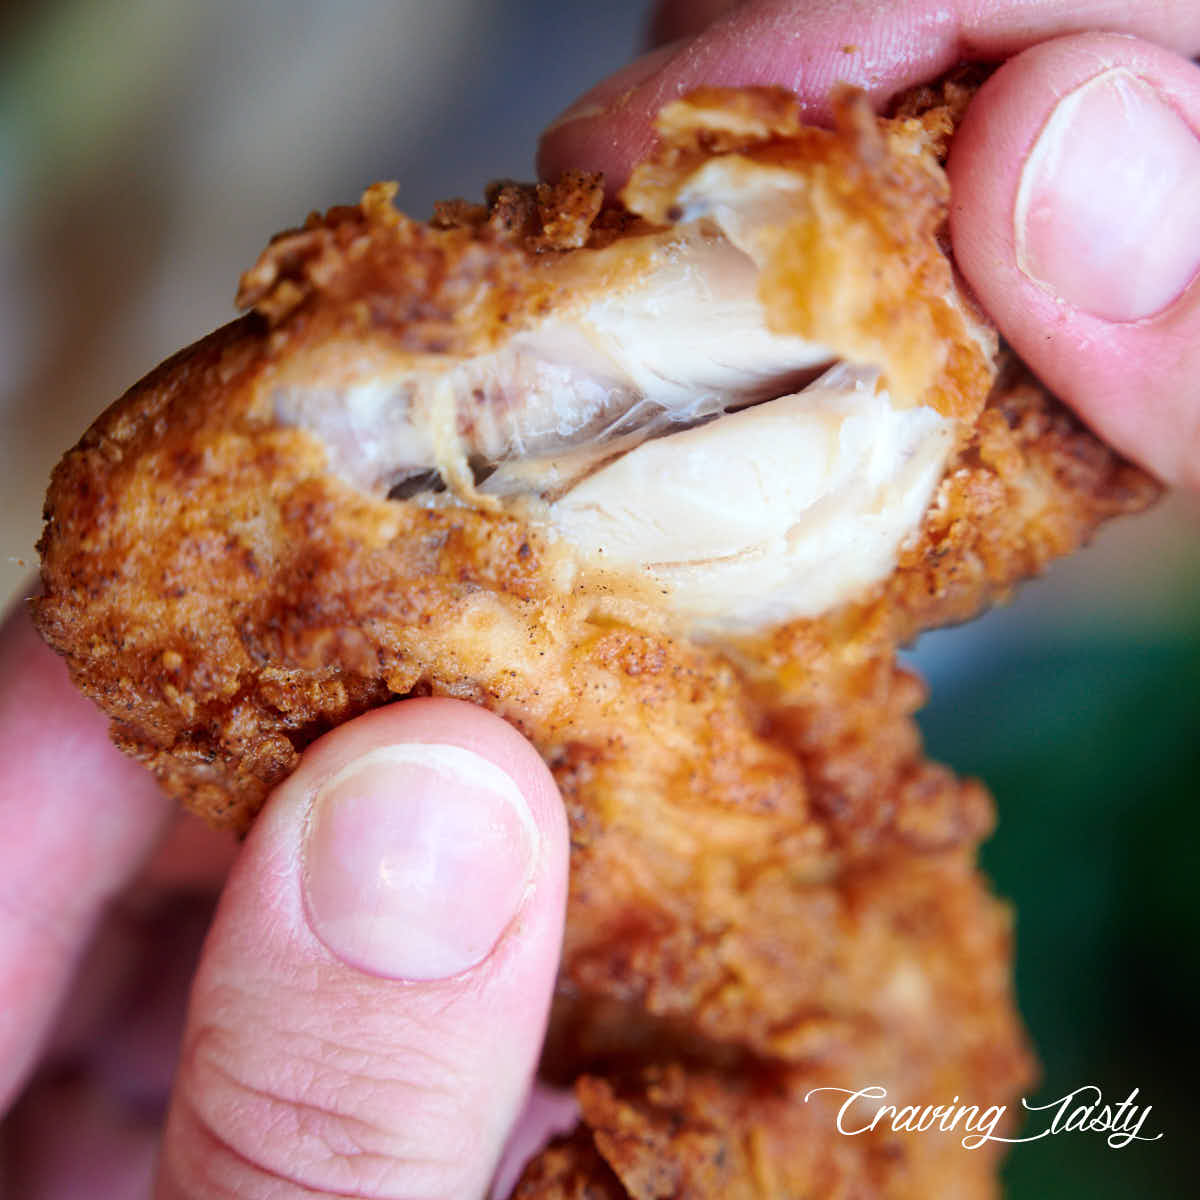 Golden brown fried chicken wings split open, showing moist, juicy meat.